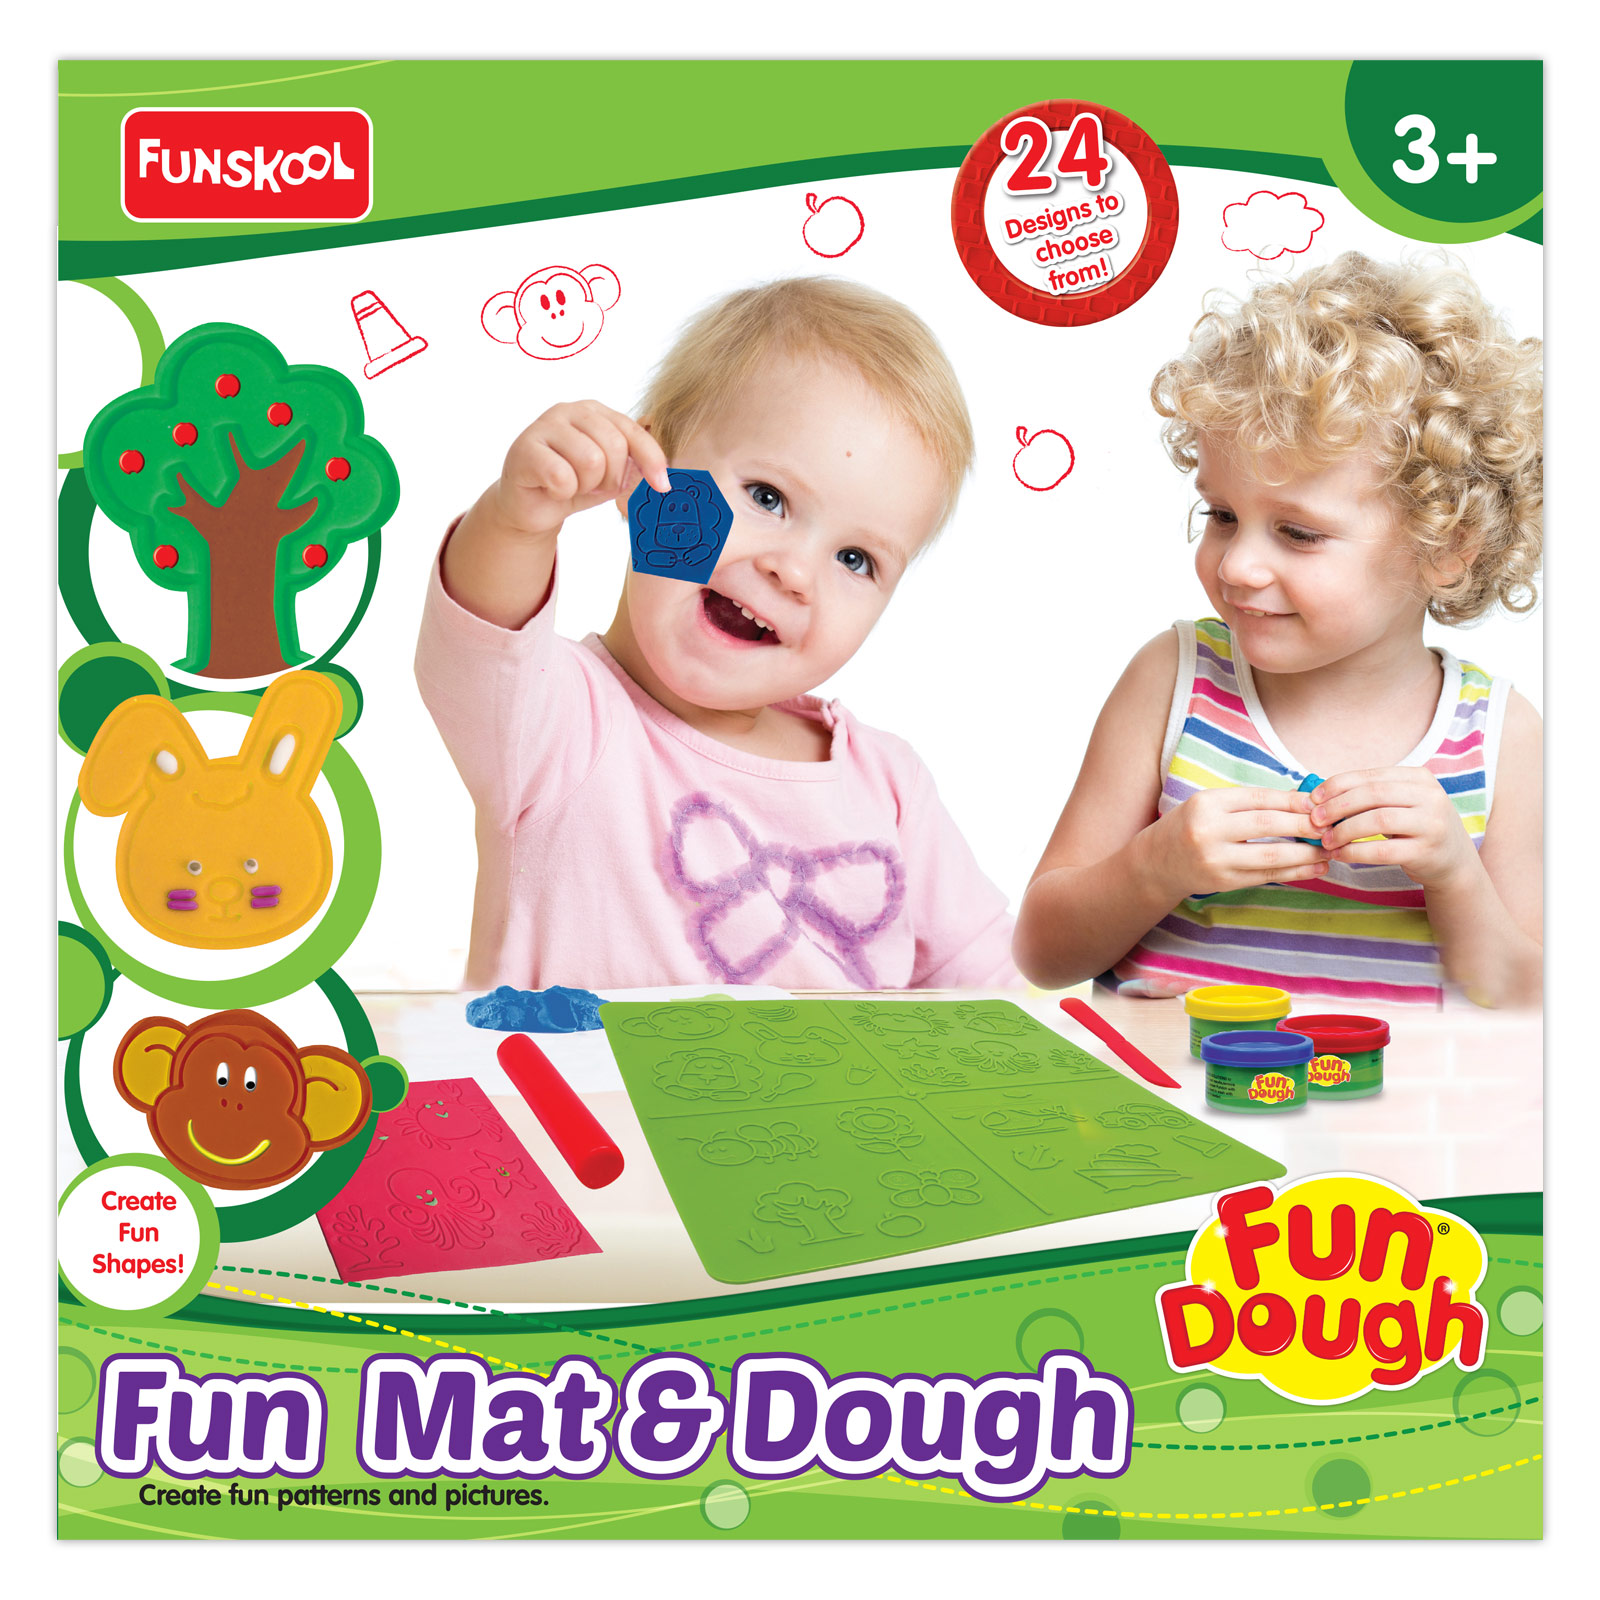 Fun Mat & Dough